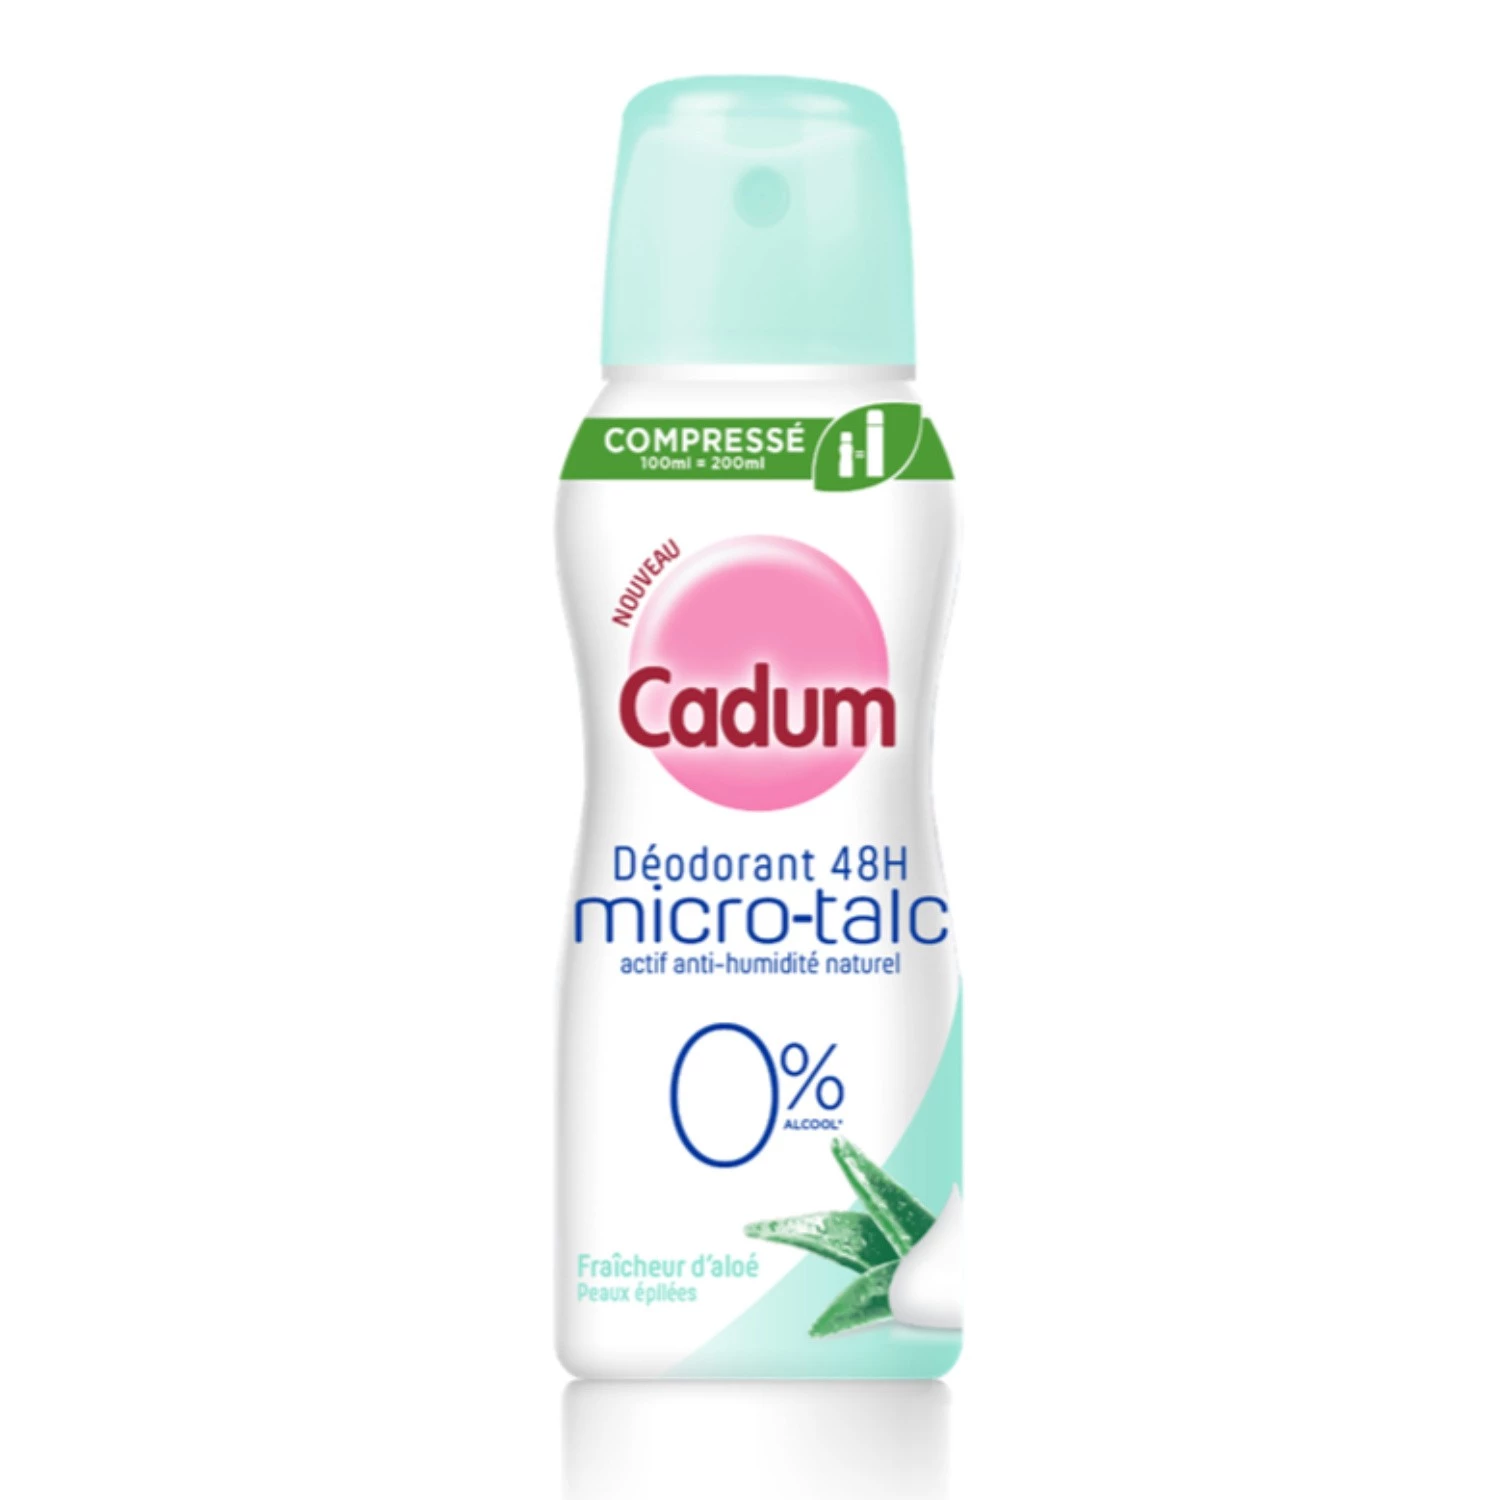 Gecomprimeerde deodorant 4 uur microtalk frisheid van aloë 100 ml - CADUM